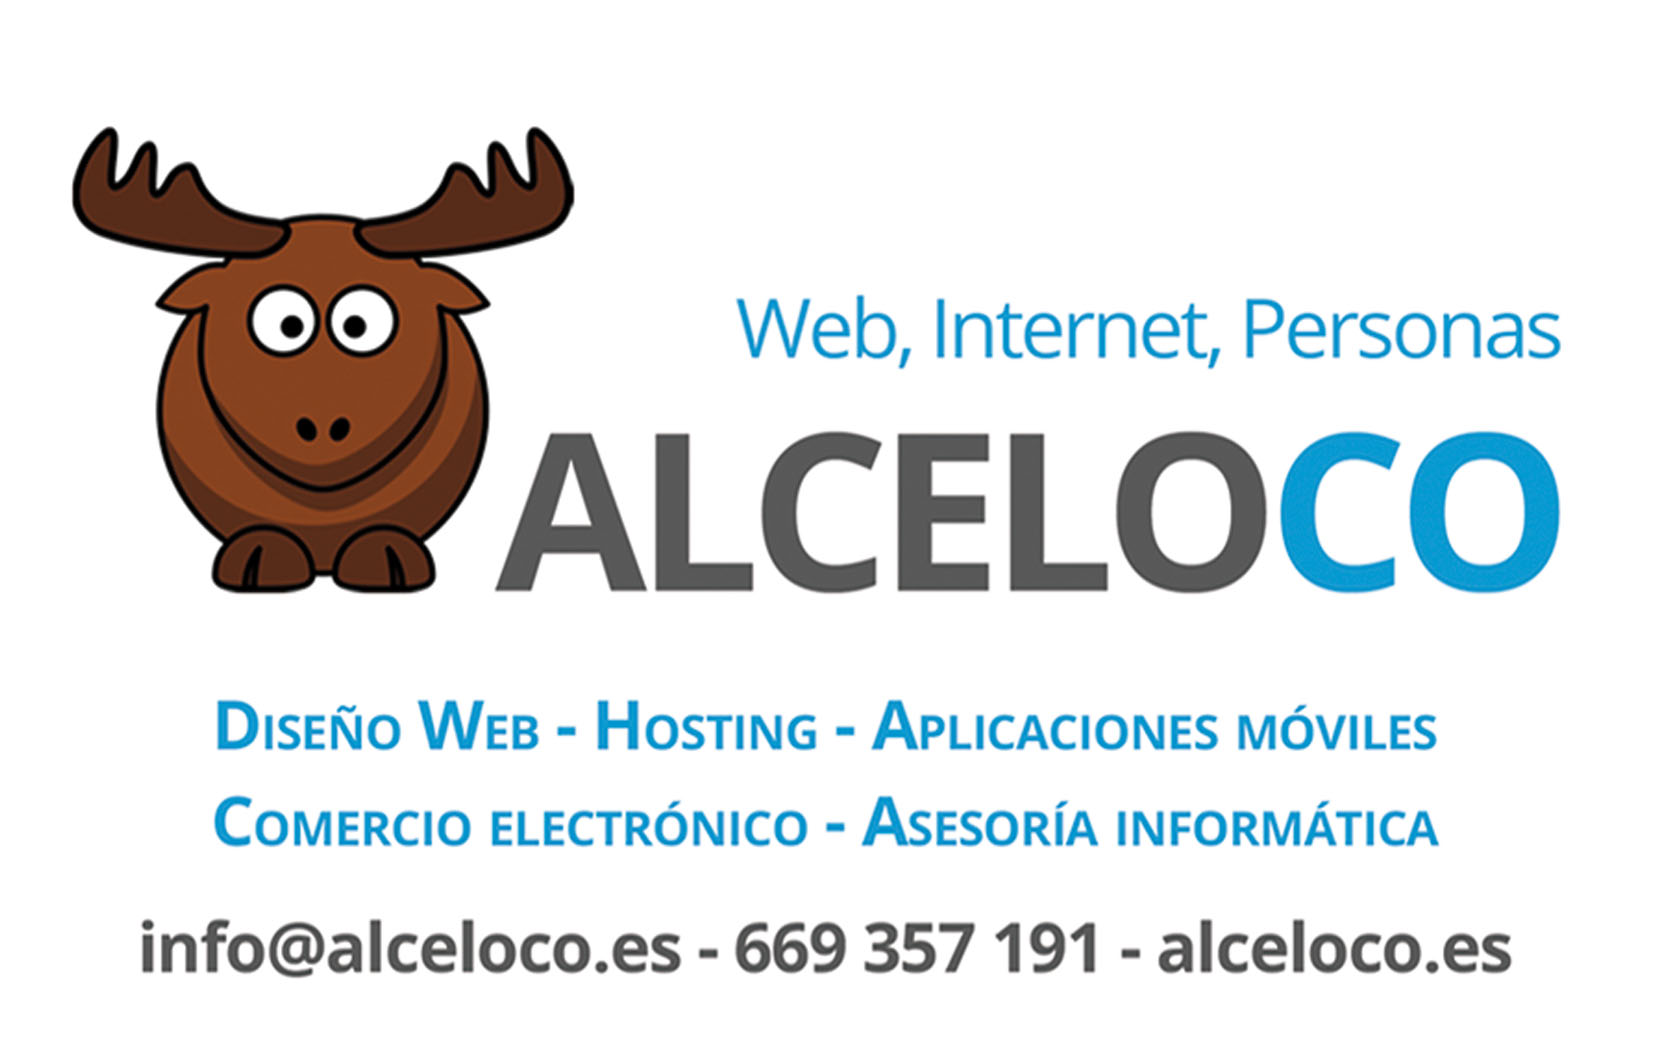 Alceloco